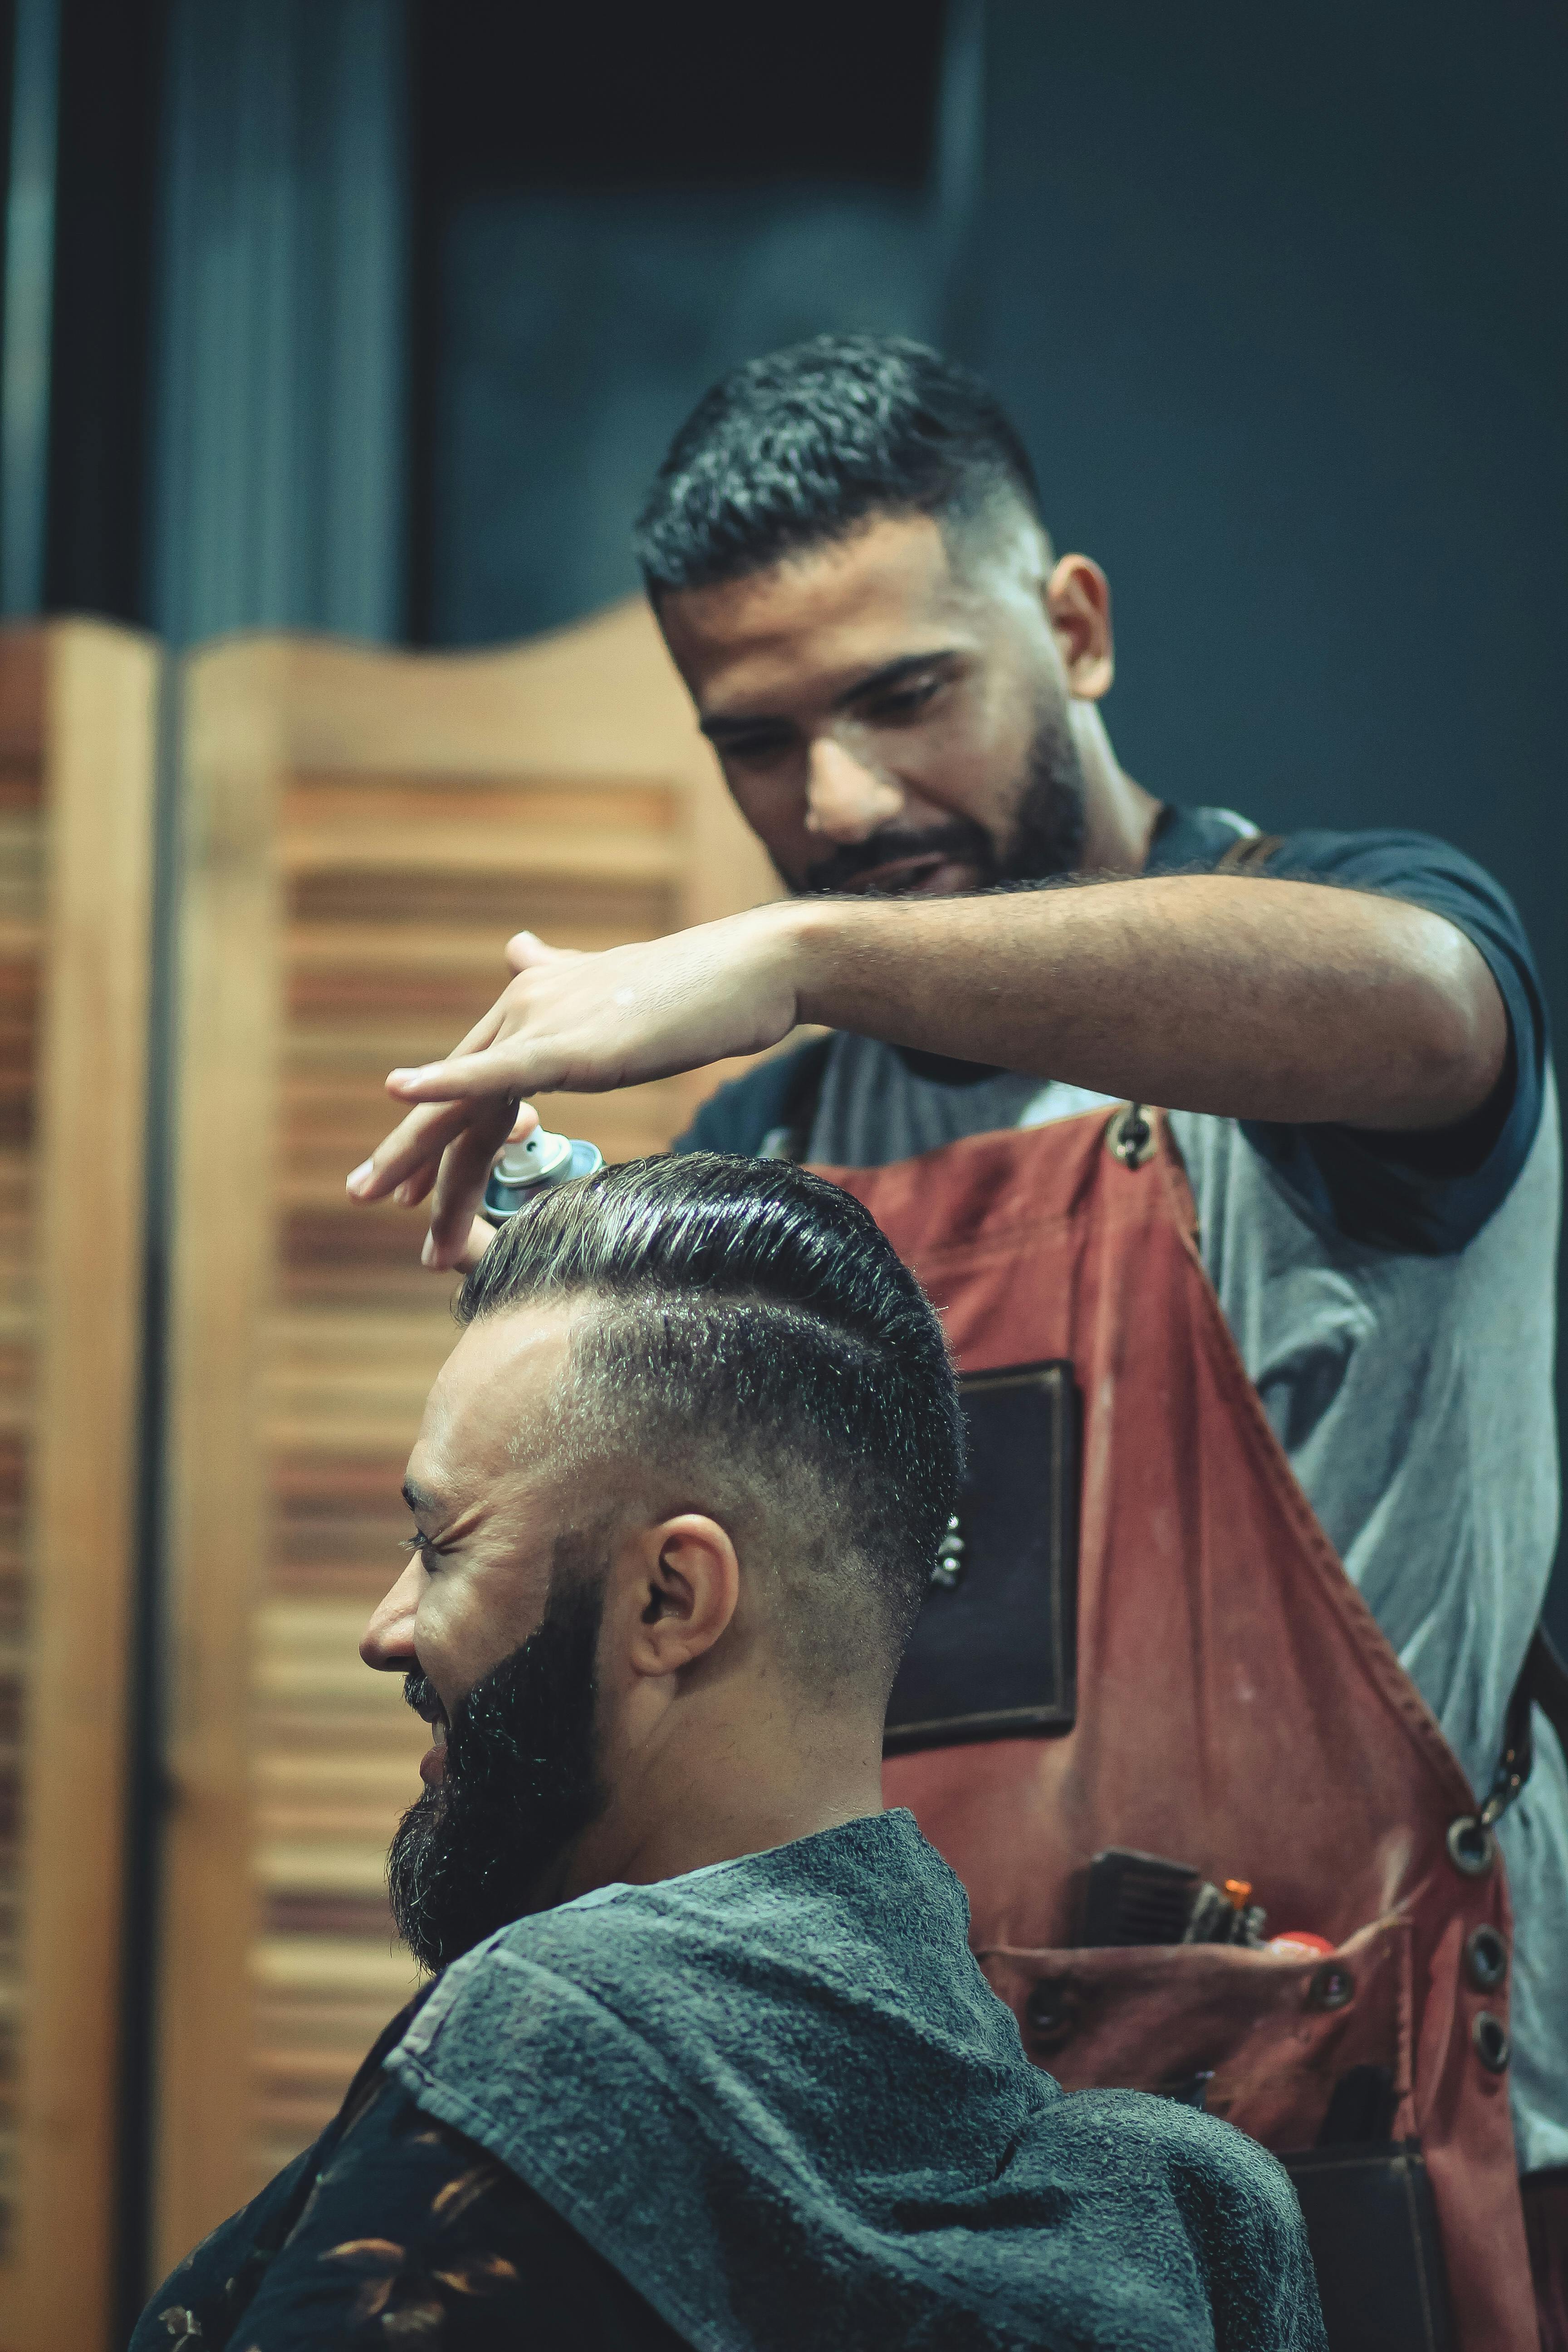 Barbero Barbería Hombres Corte De - Foto gratis en Pixabay - Pixabay